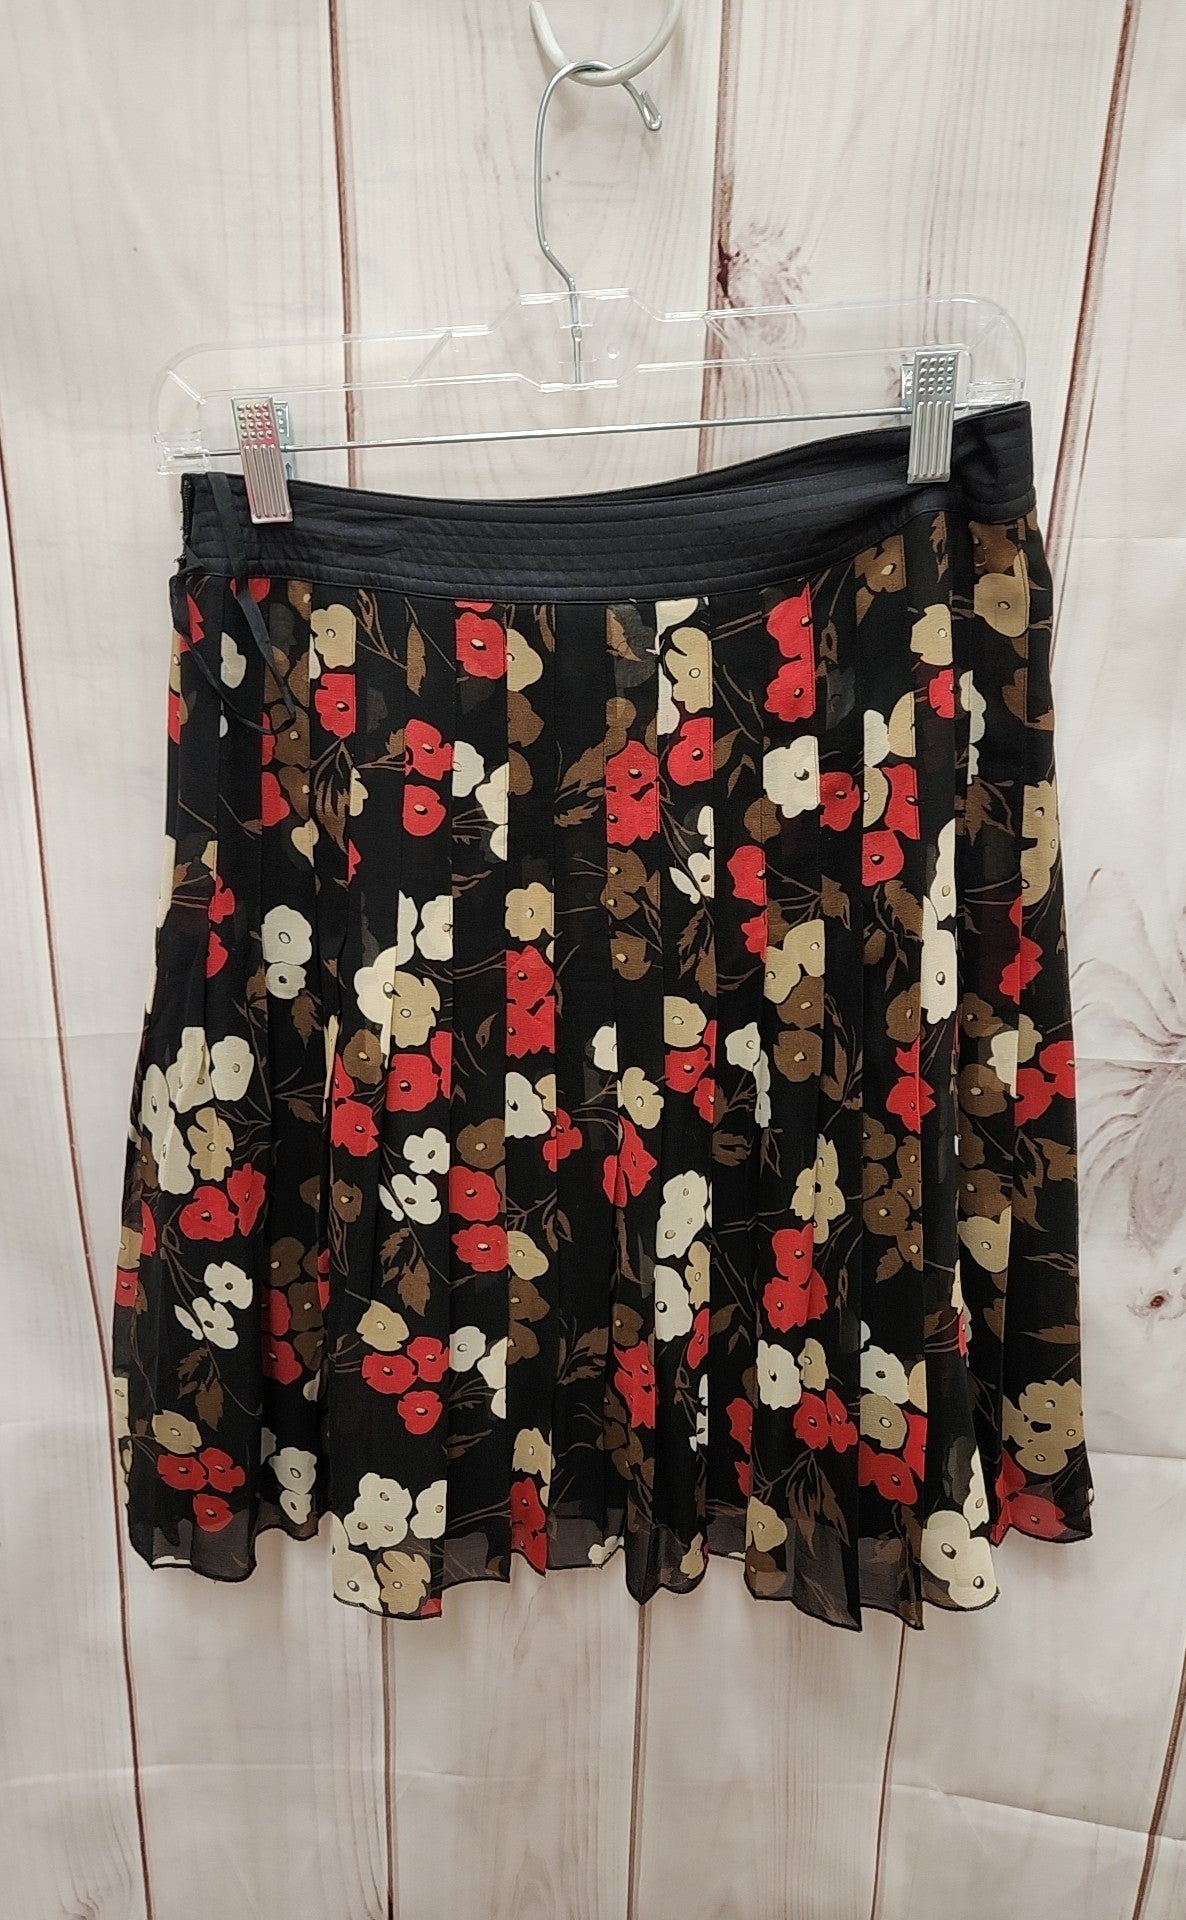 Nine West Women's Size 2 Black Floral Skirt